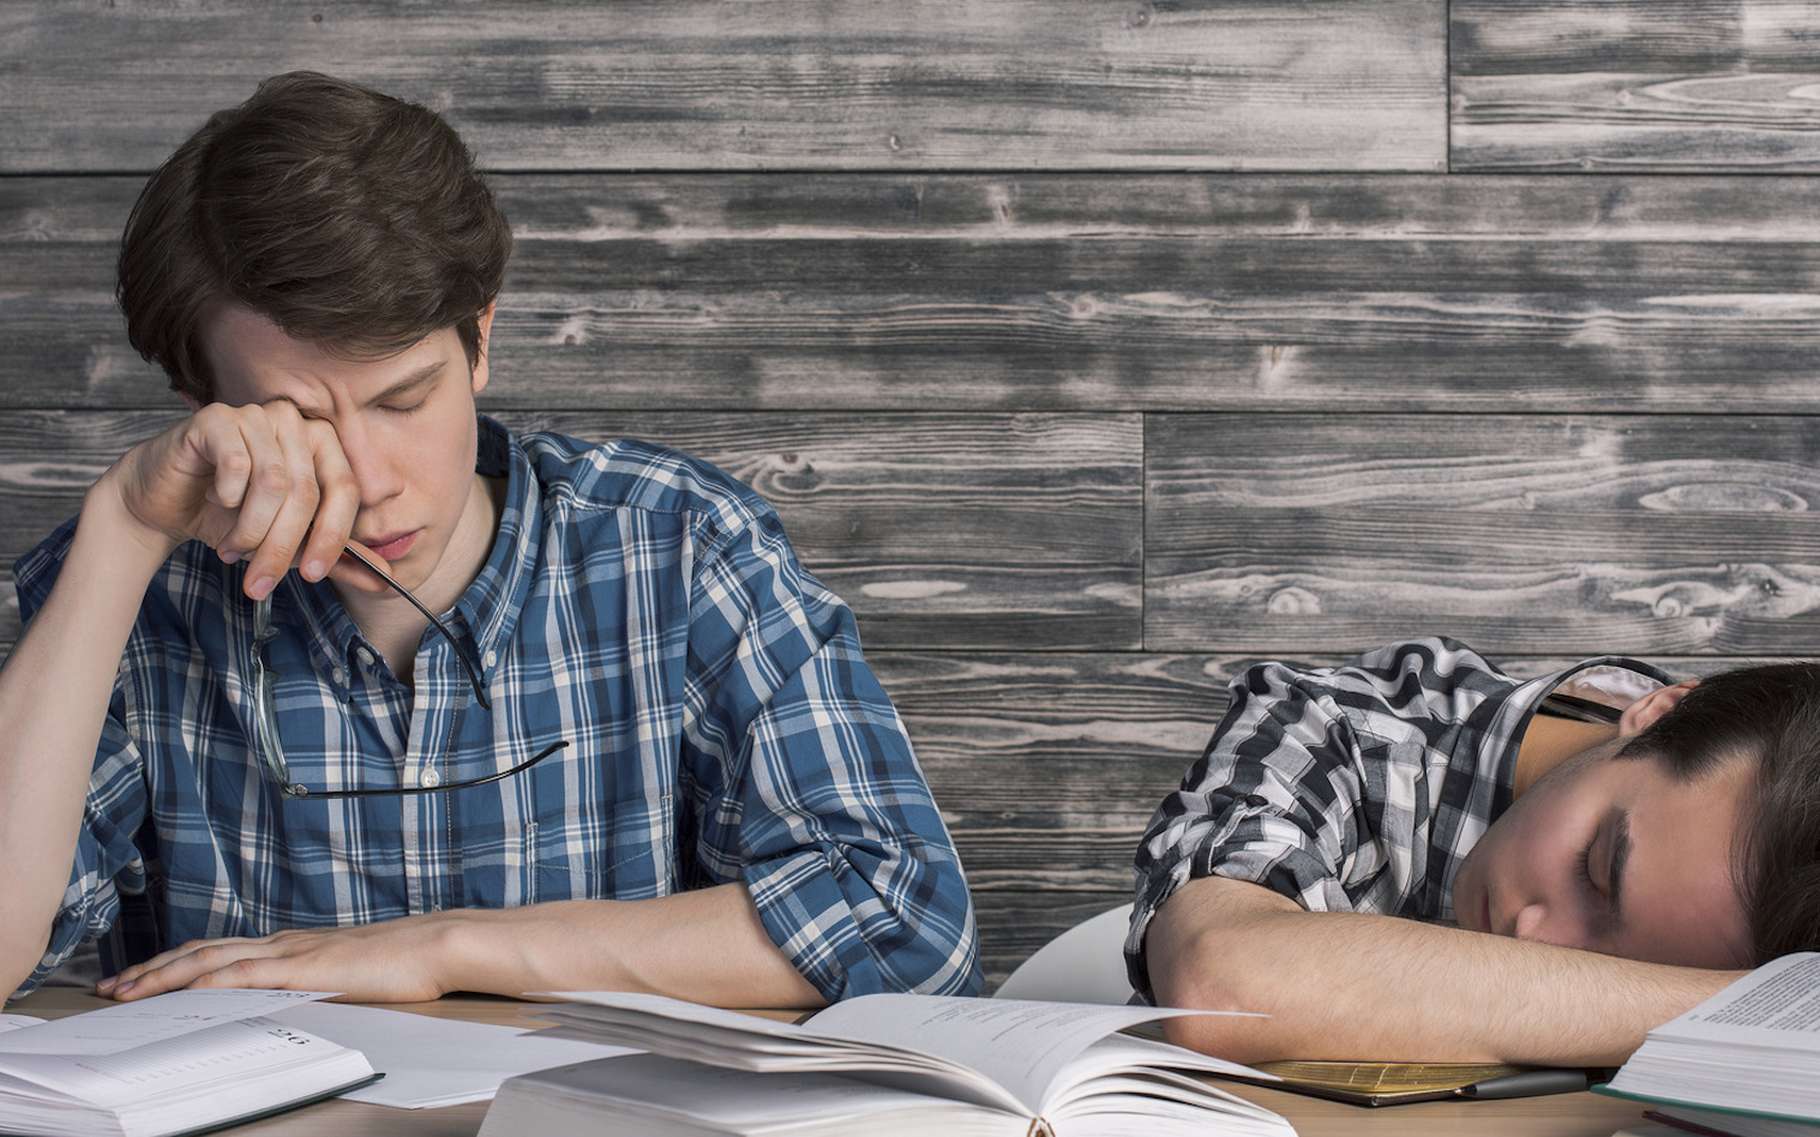 L'impact du sommeil sur la réussite des études